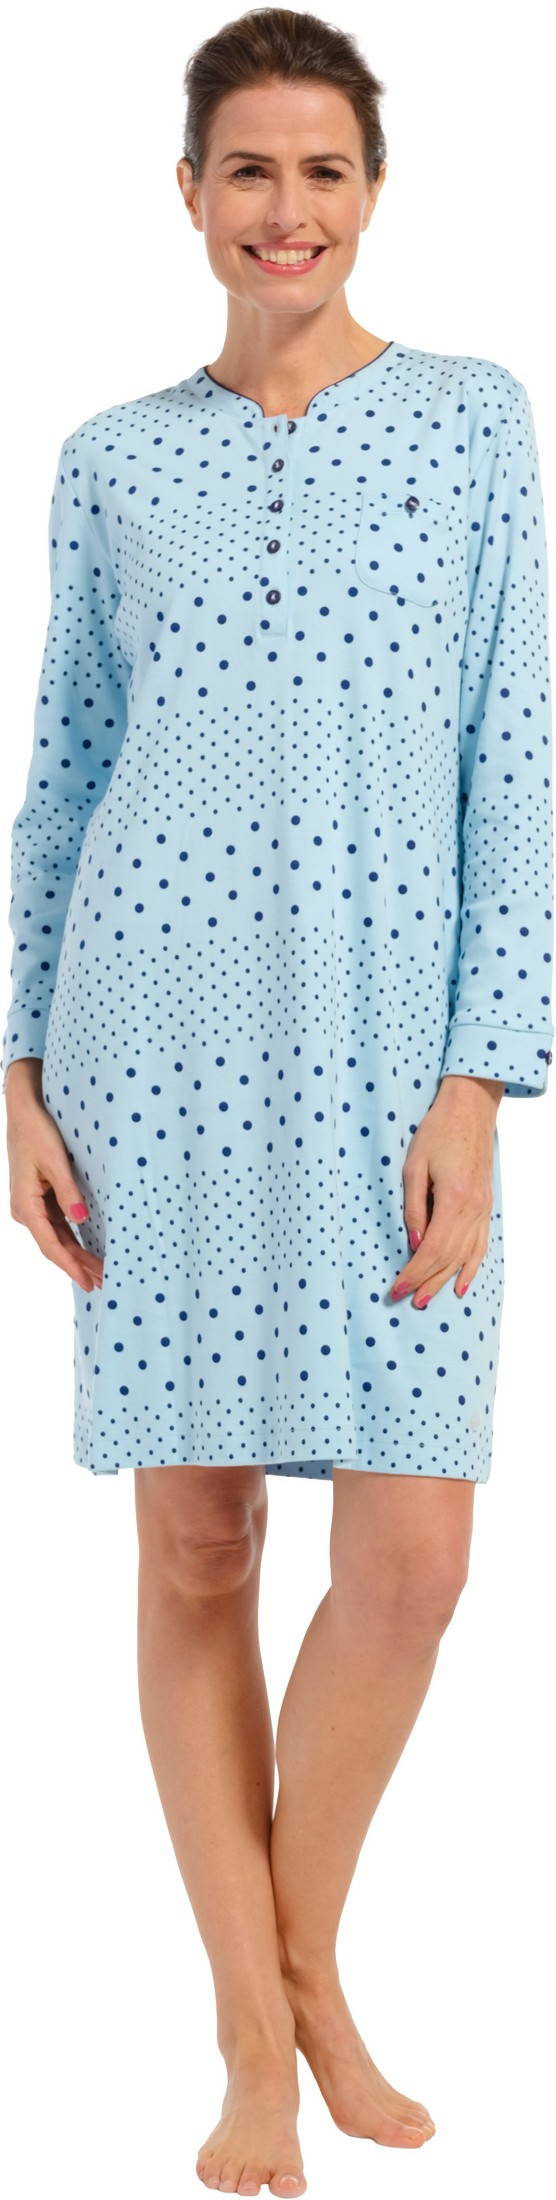 Pastunette dames nachthemd 10232-162-4 - Blauw - 44